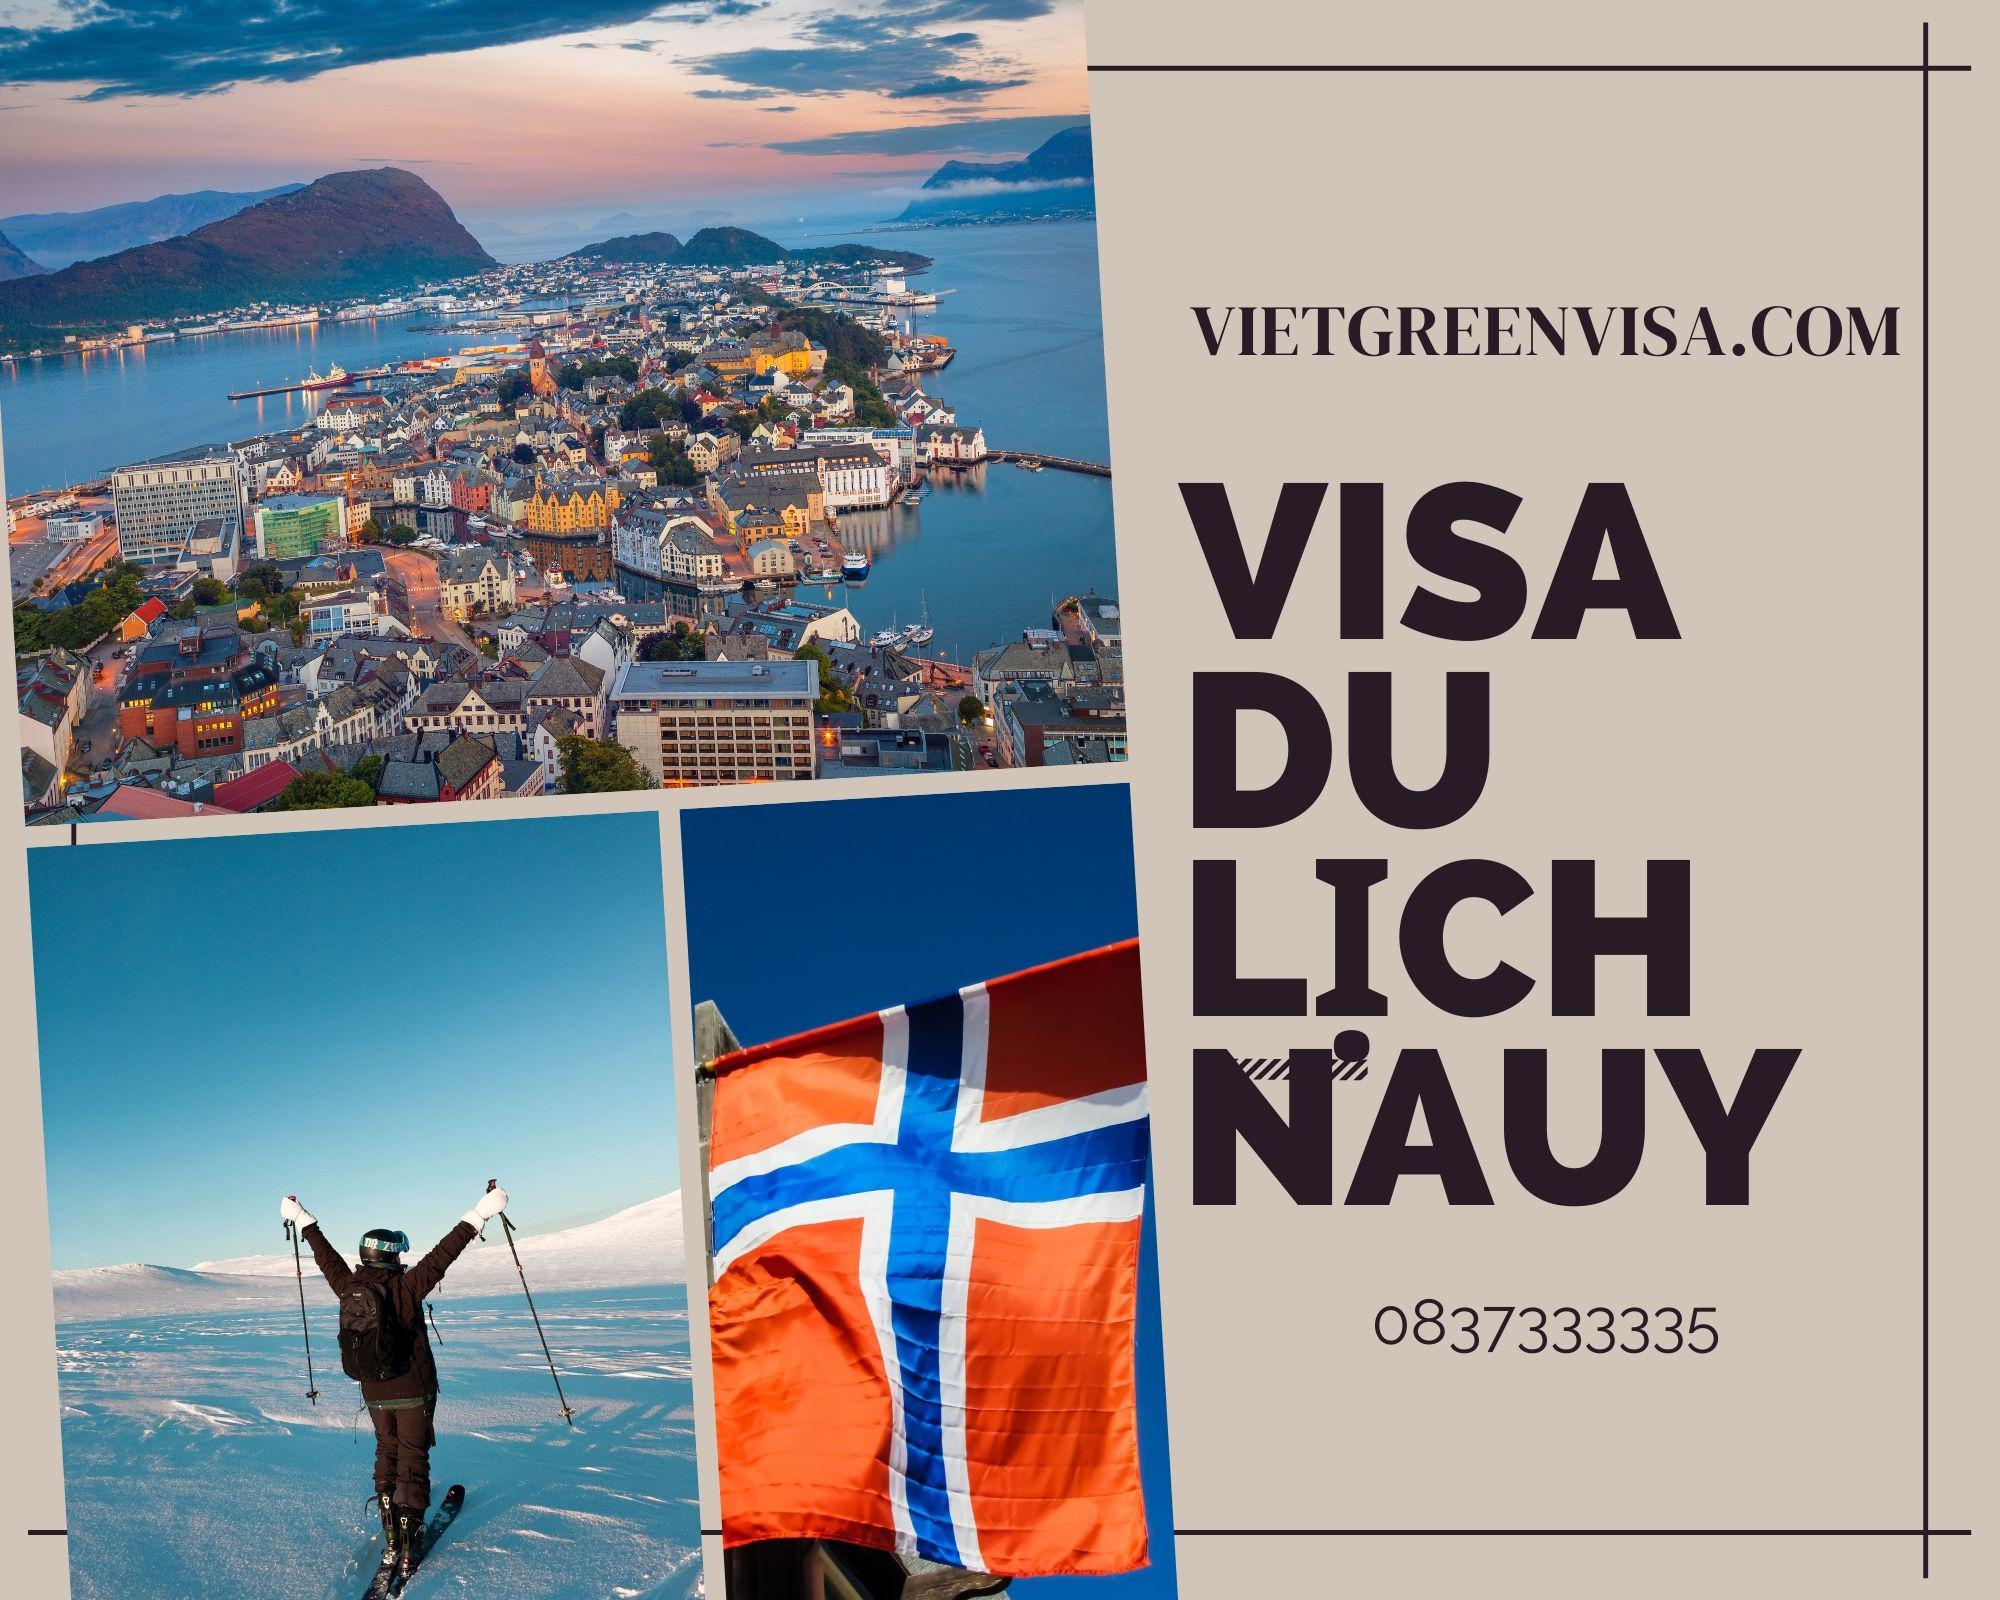 Dịch vụ xin visa du lịch Nauy giá ưu đãi nhất